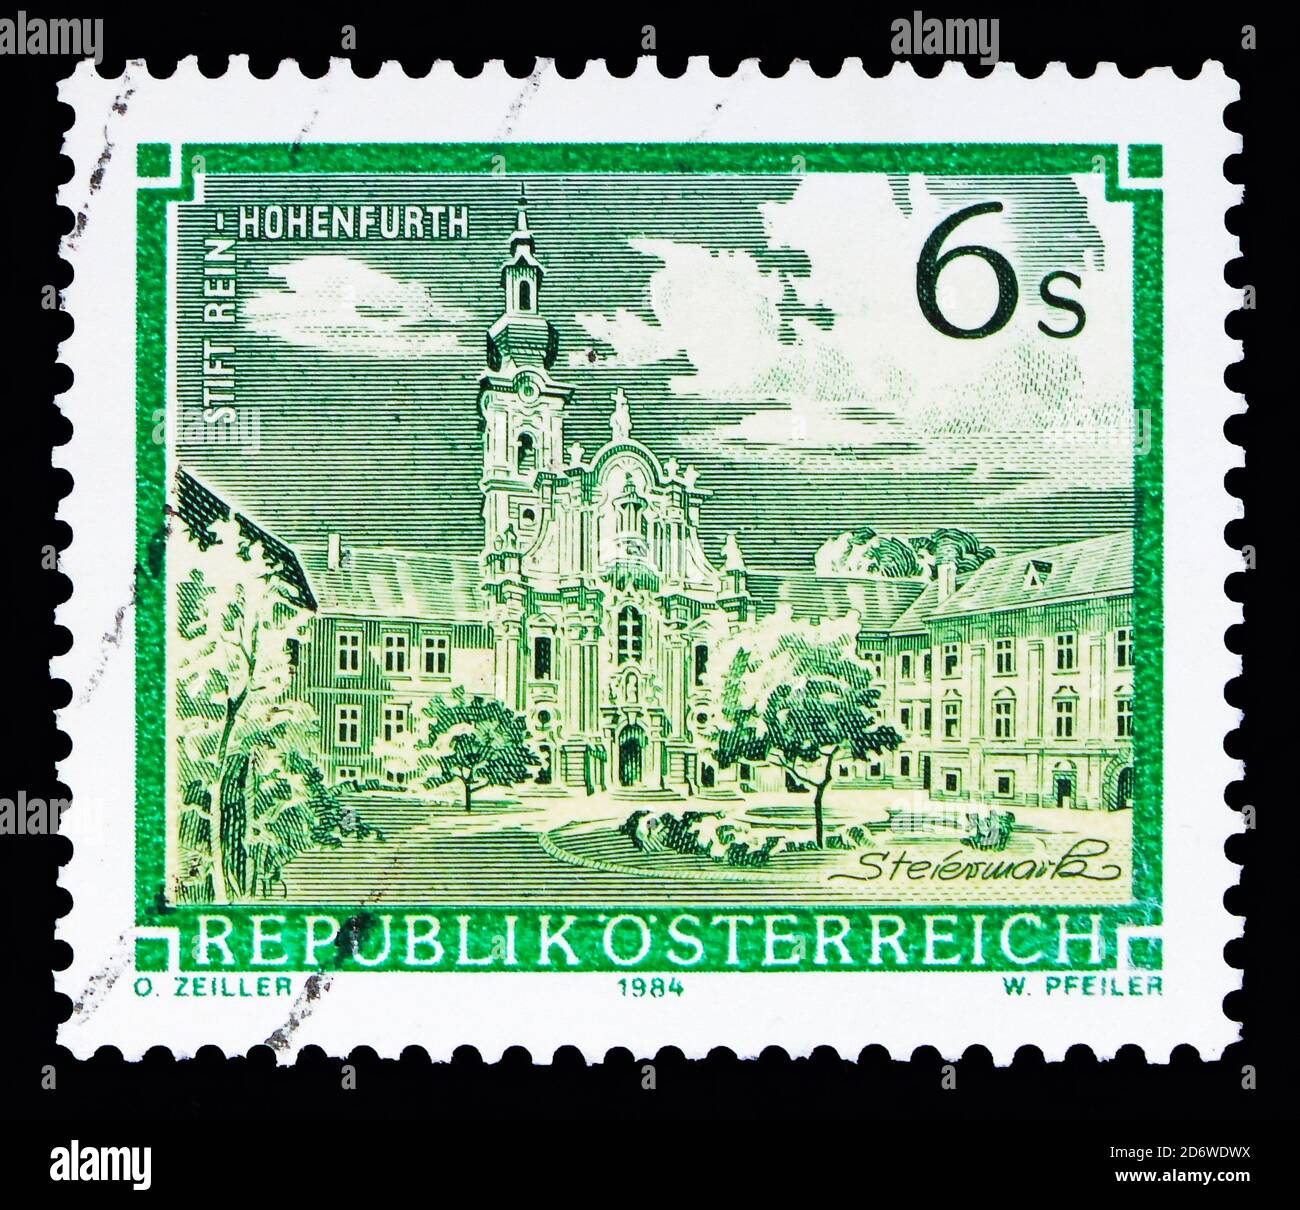 MOSCOU, RUSSIE - 13 MAI 2018 : un timbre imprimé en Autriche montre l'abbaye de rein-Hohenfurth, les monastères et la série Abbeys, vers 1984 Banque D'Images